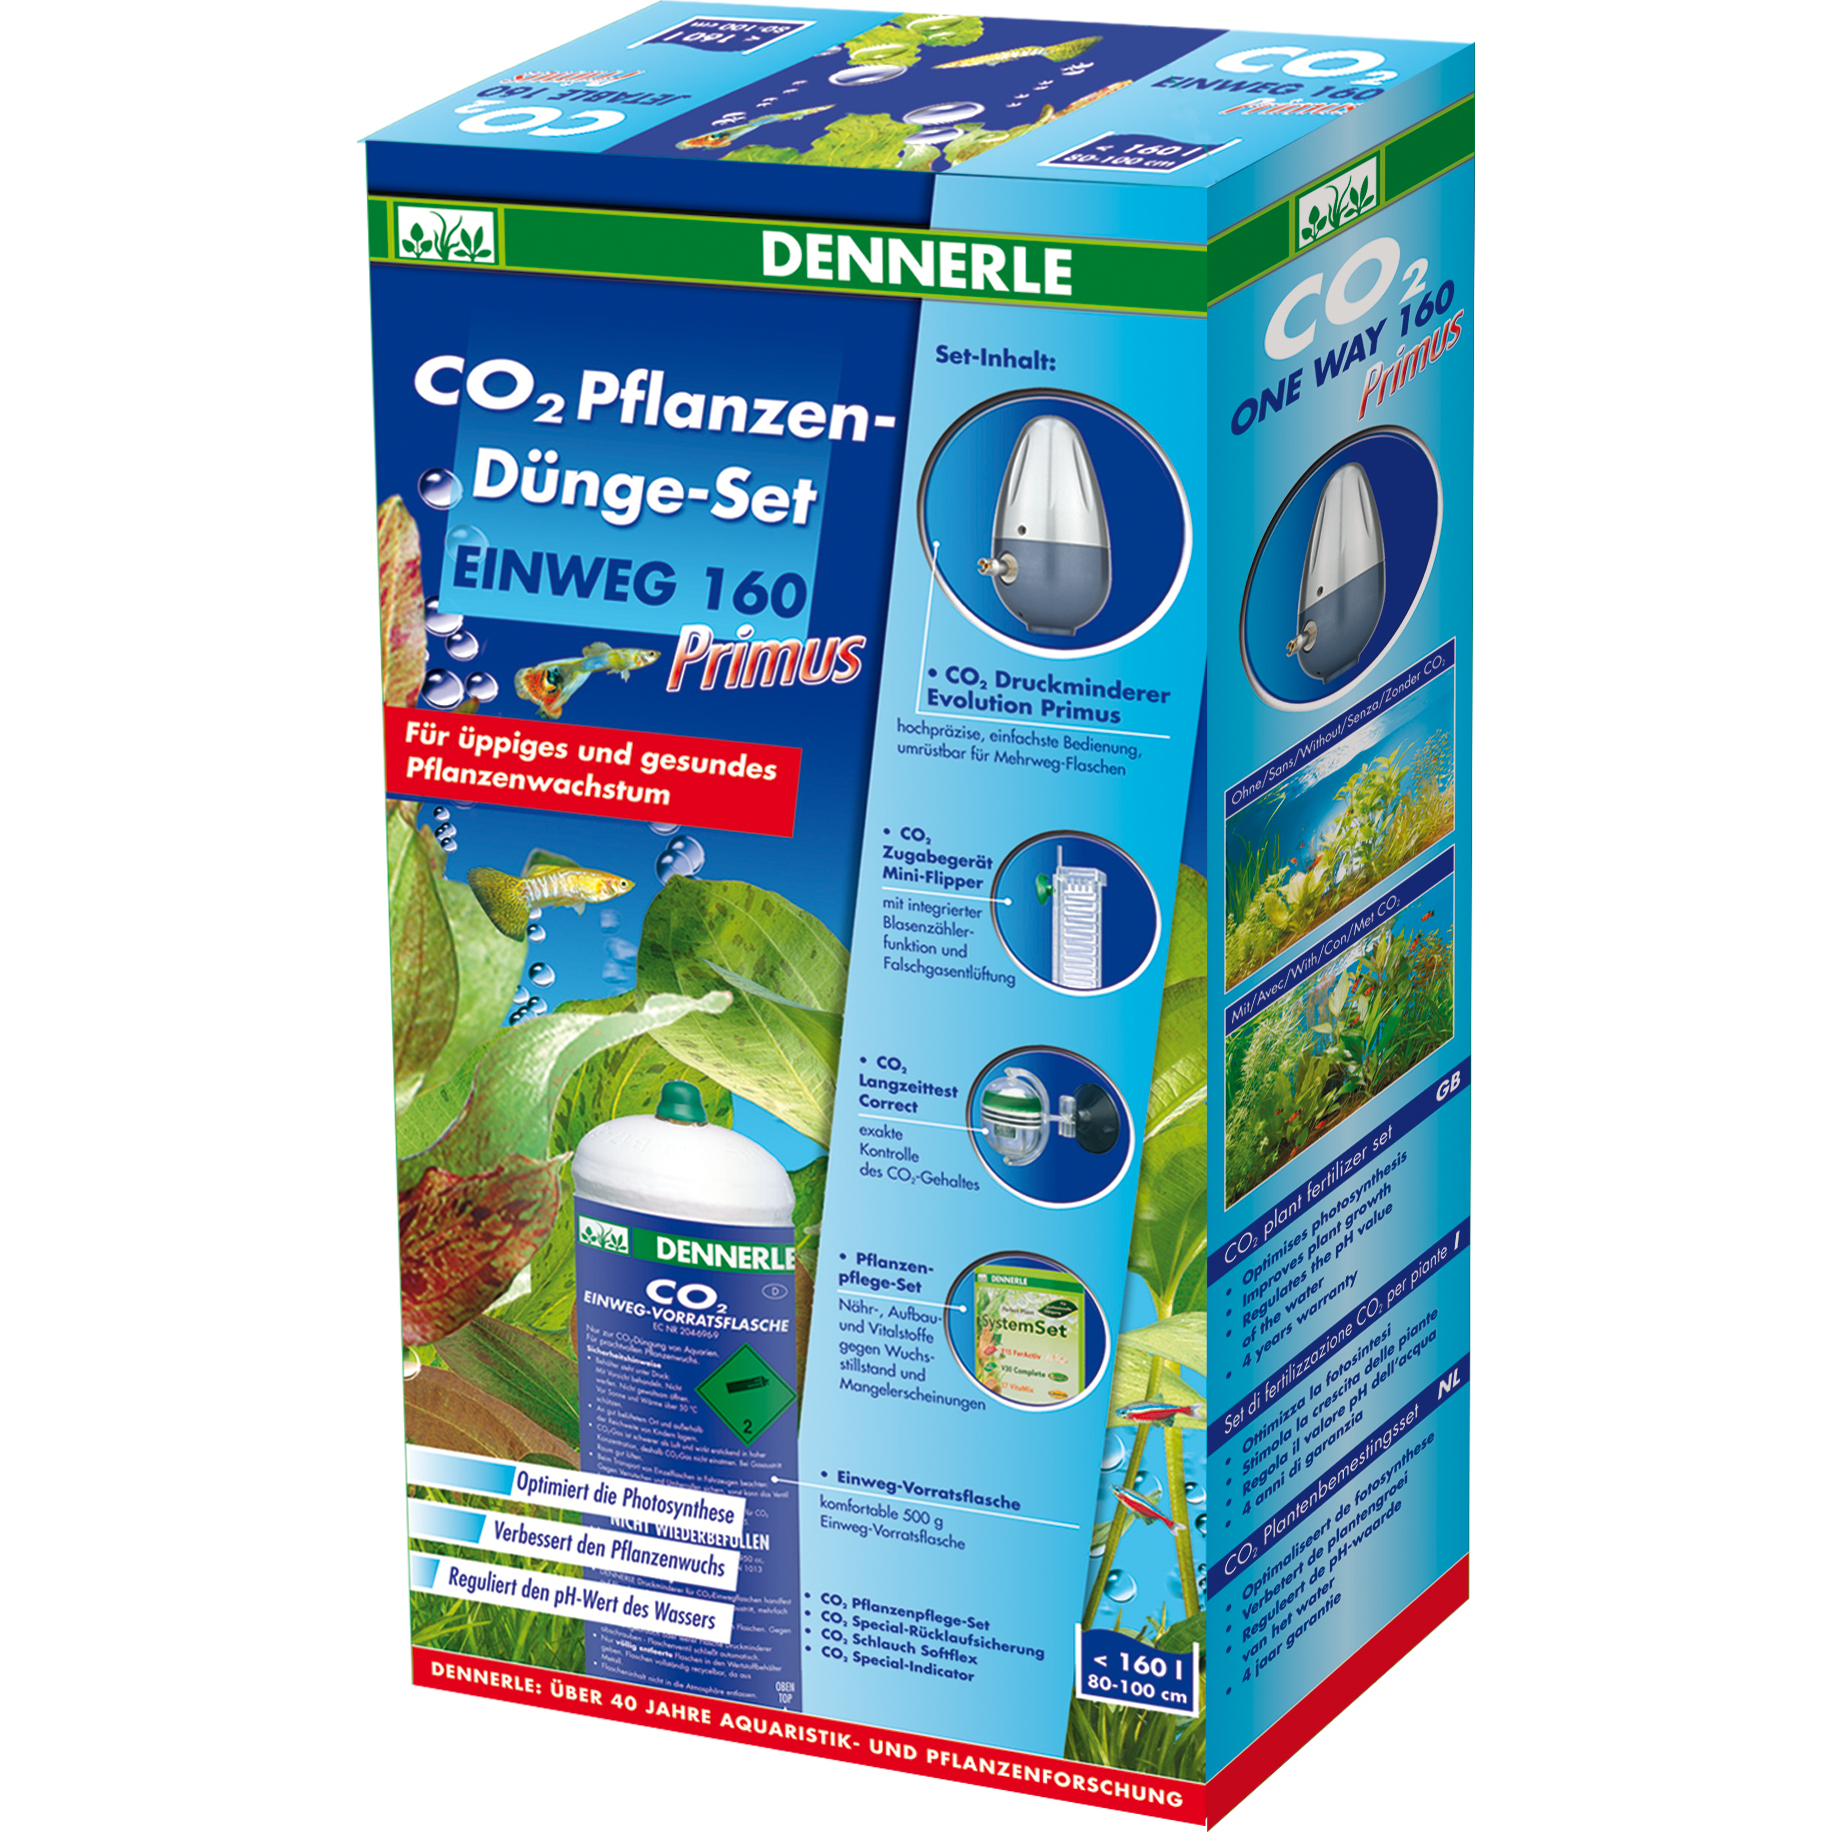 Dennerle CO2 Pflanzen-Dünge-Set Einweg 160 Primus